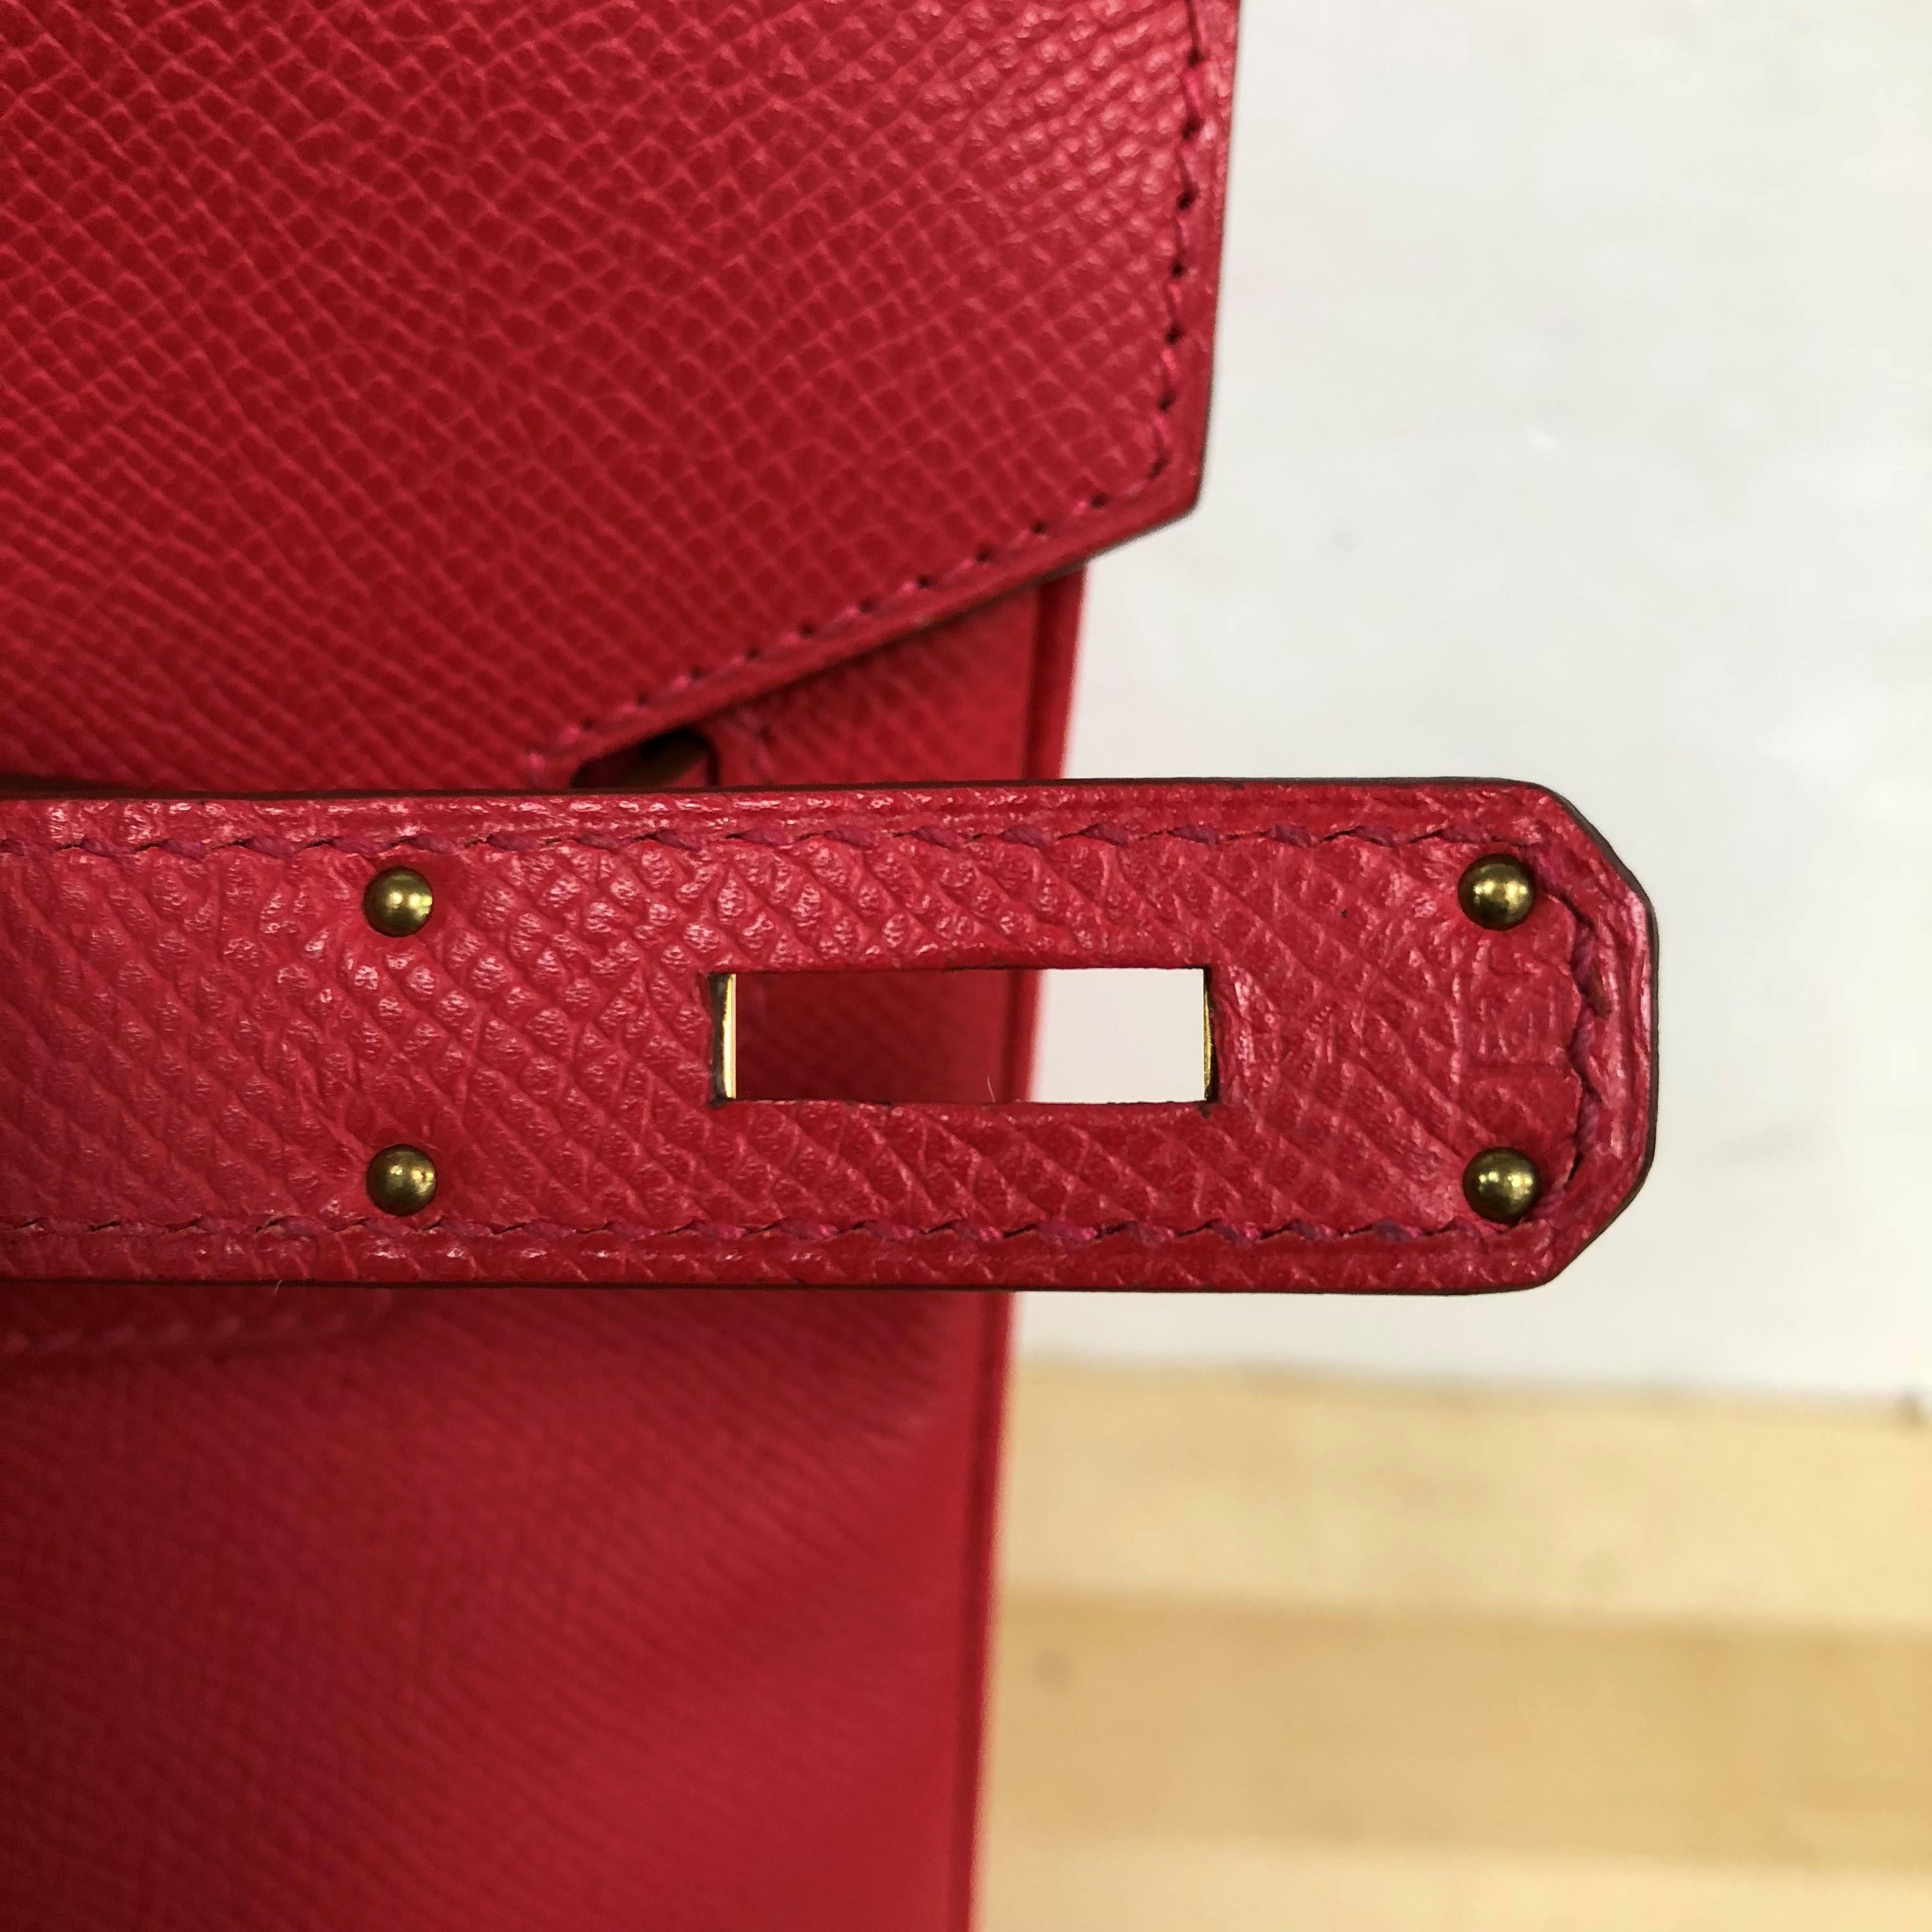 Hermes Birkin Handbag Rouge Vif Epsom with Gold Hardware 35 4